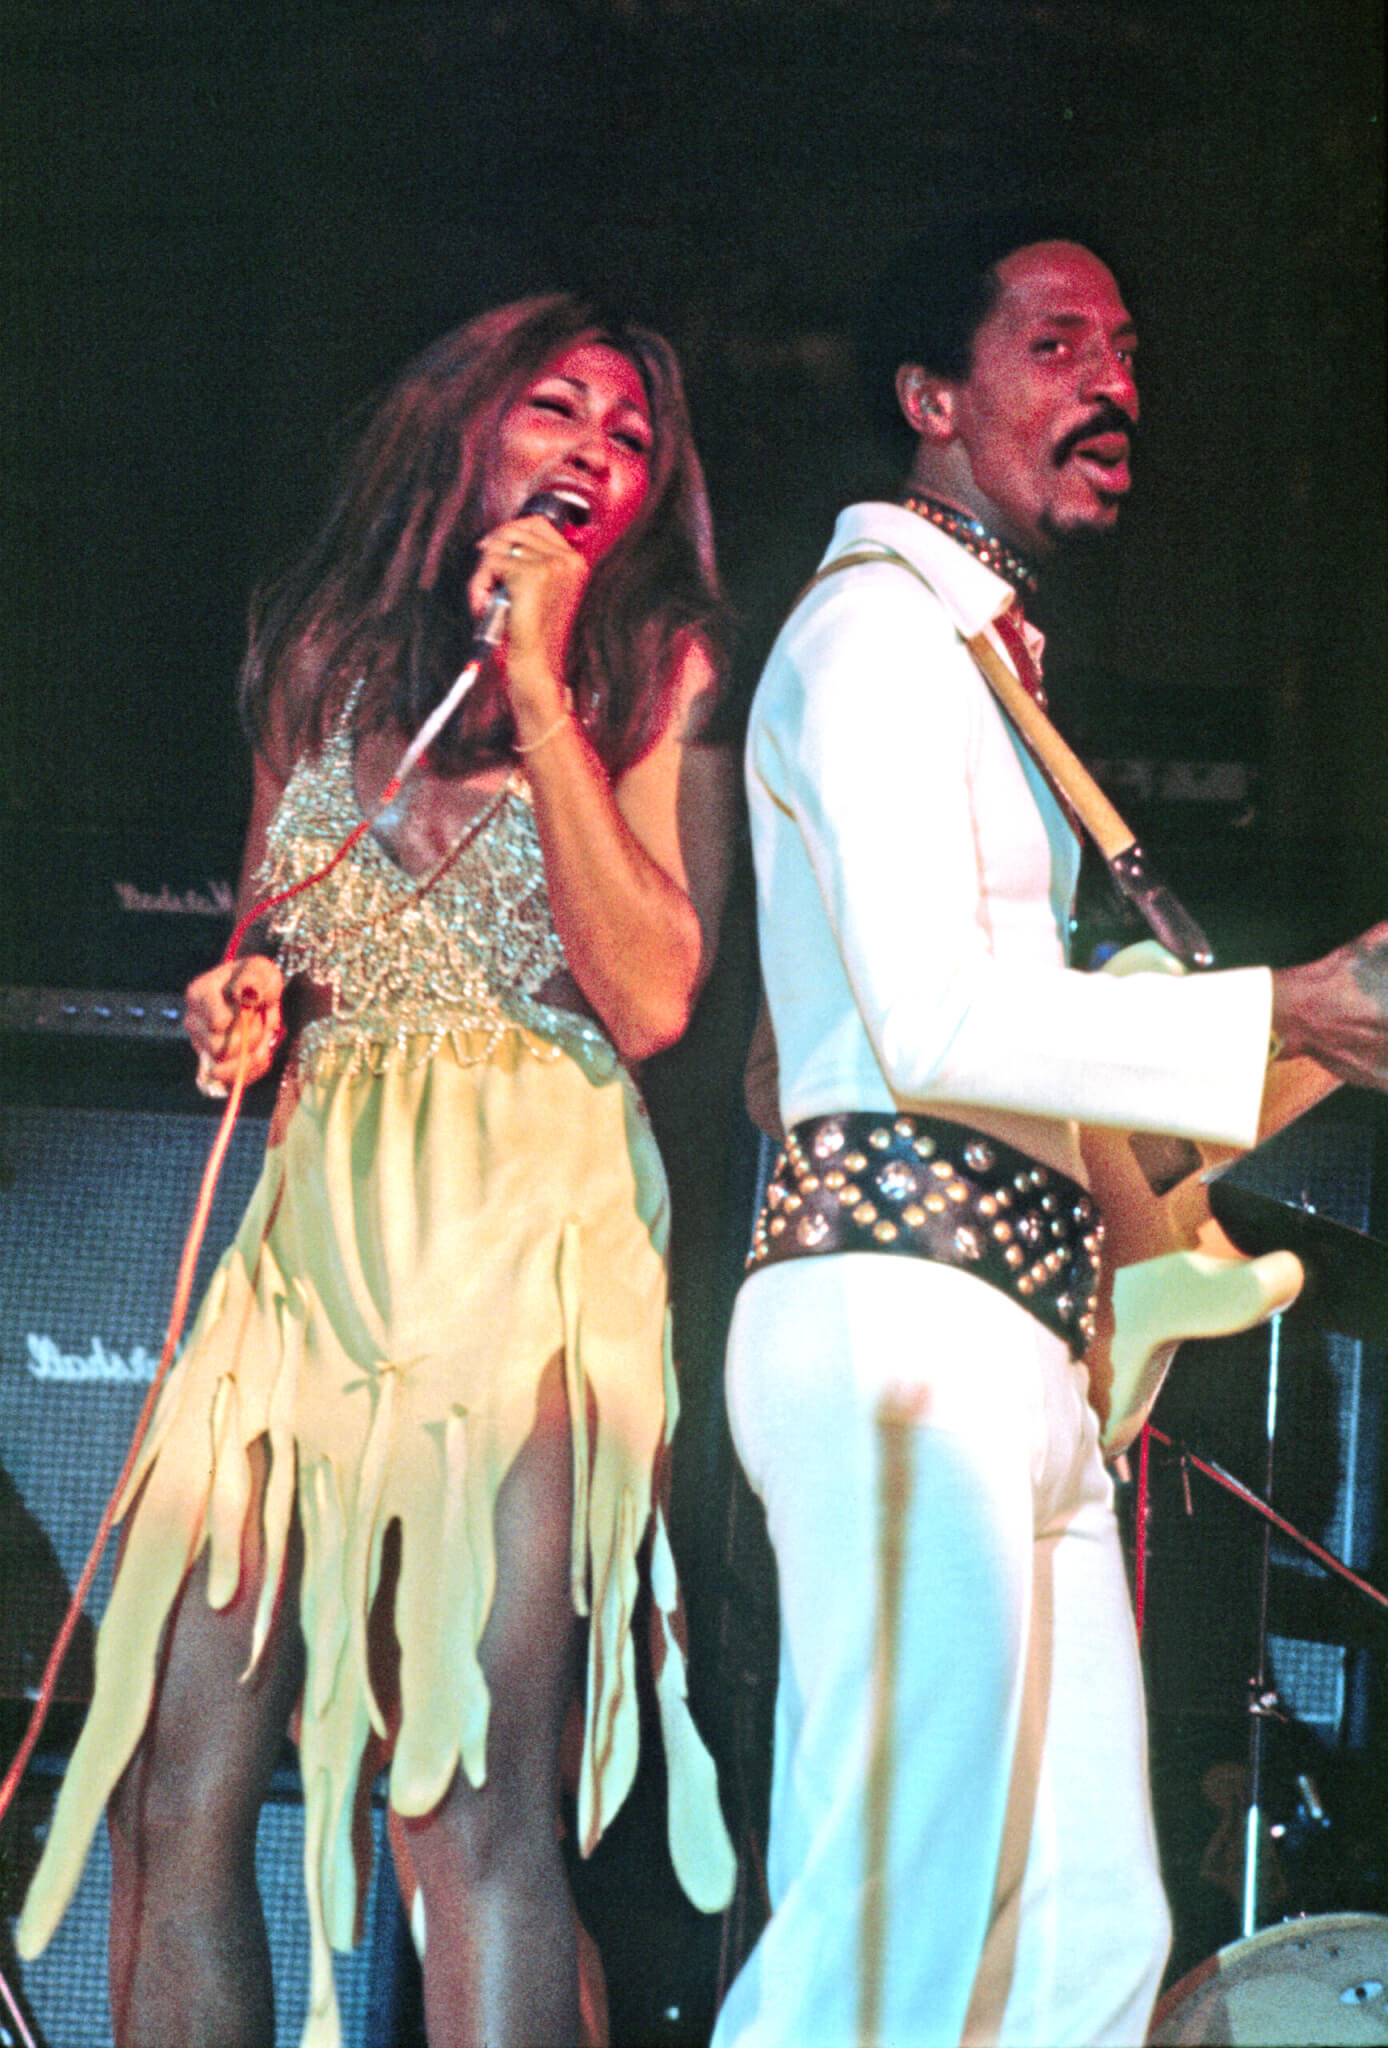 Ike & Tina Turner perform together.